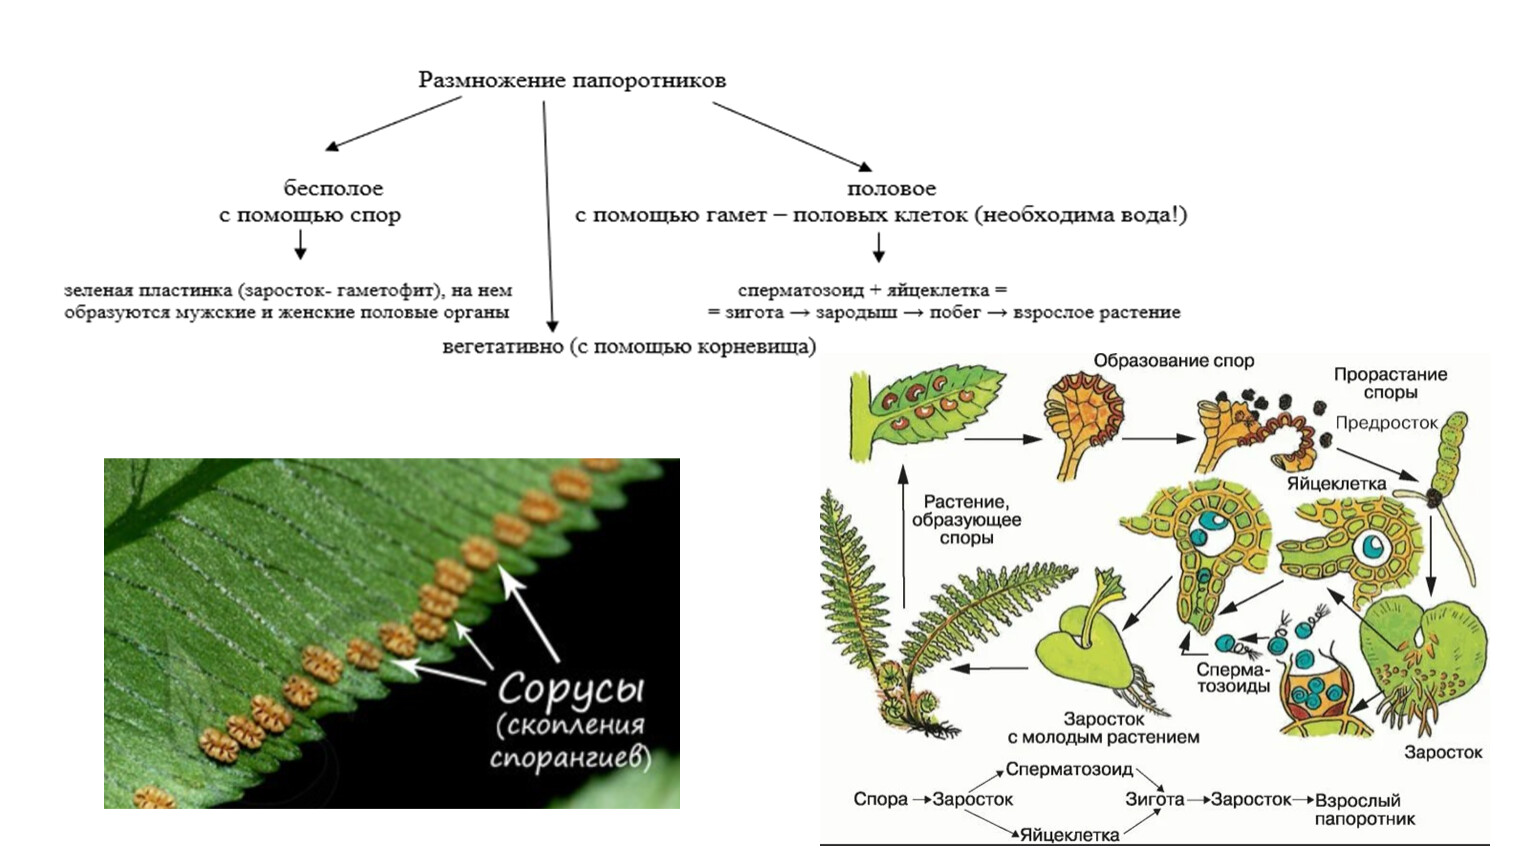 Хвощи это споровые растения весной появляются. Гаметофит плауна. Жизненный цикл папоротника орляка. Заросток плаунов. Схема развития споровых растений.